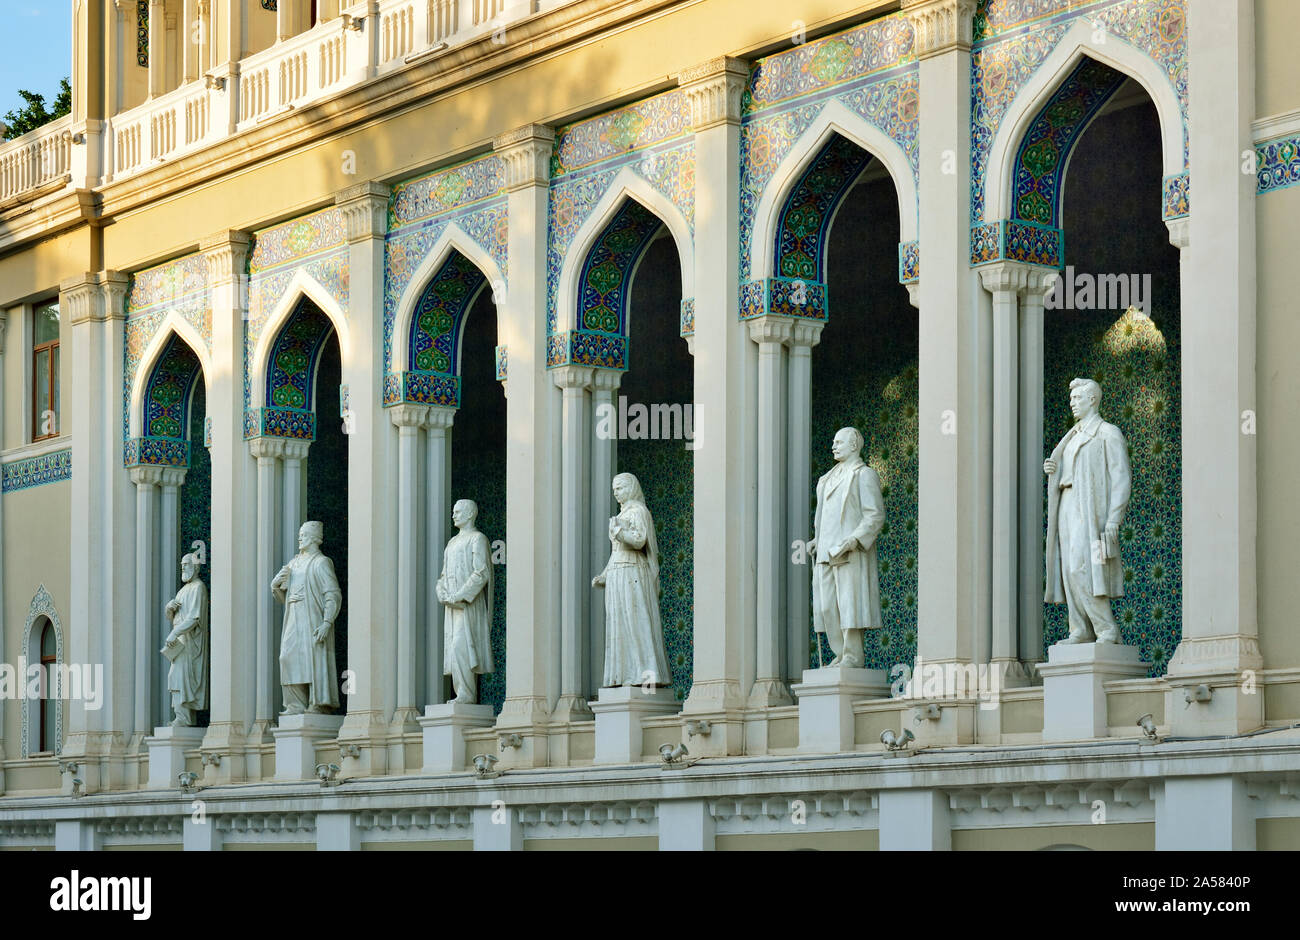 El Museo de Literatura de Azerbaiyán Nizami en Bakú, nombrado después de la gran epopeya romántica poeta Nizami Ganjavi. Las estatuas son de famosos wr azerbaiyana Foto de stock